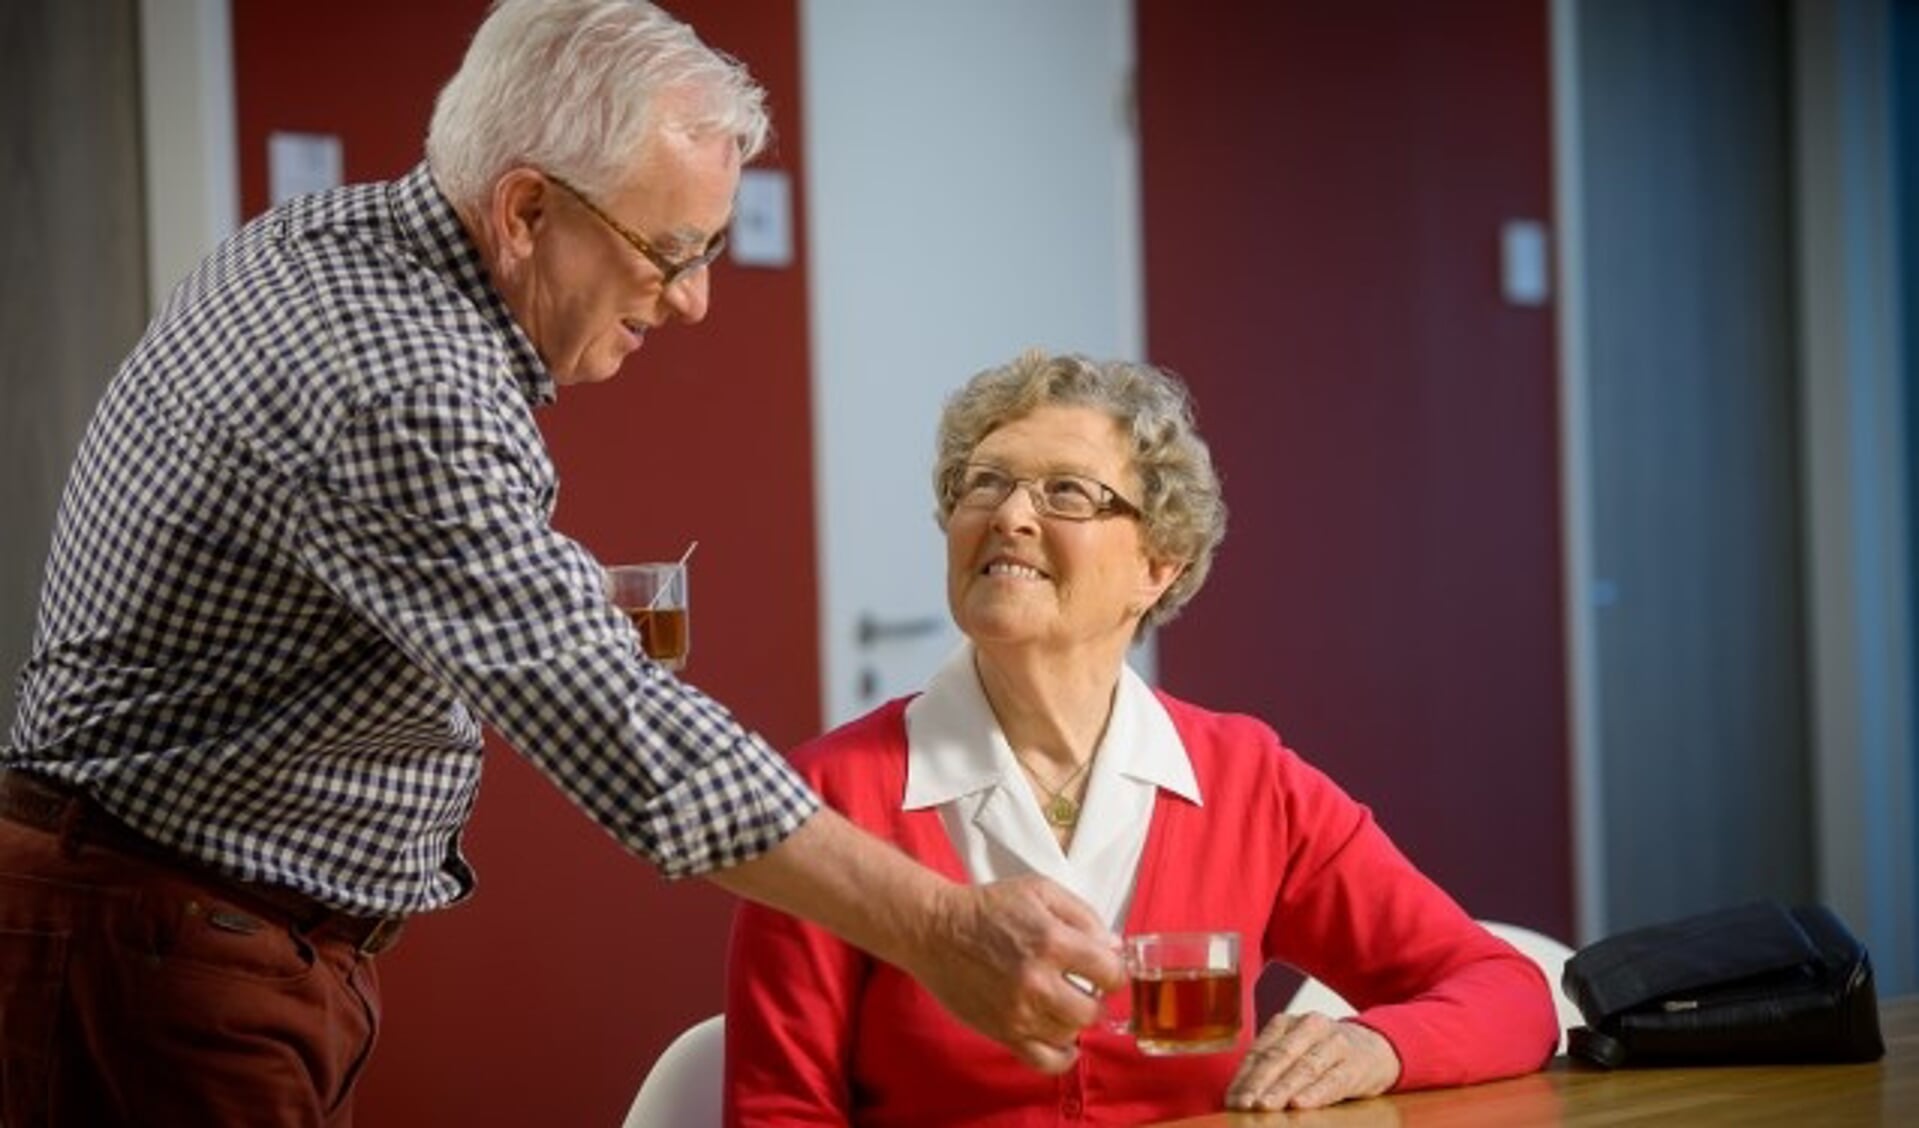 Het IJsselland Ziekenhuis in Capelle aan den IJssel heeft zich gespecialiseerd in het bieden van specialistische zorg en de juiste voorzieningen voor ouderen.